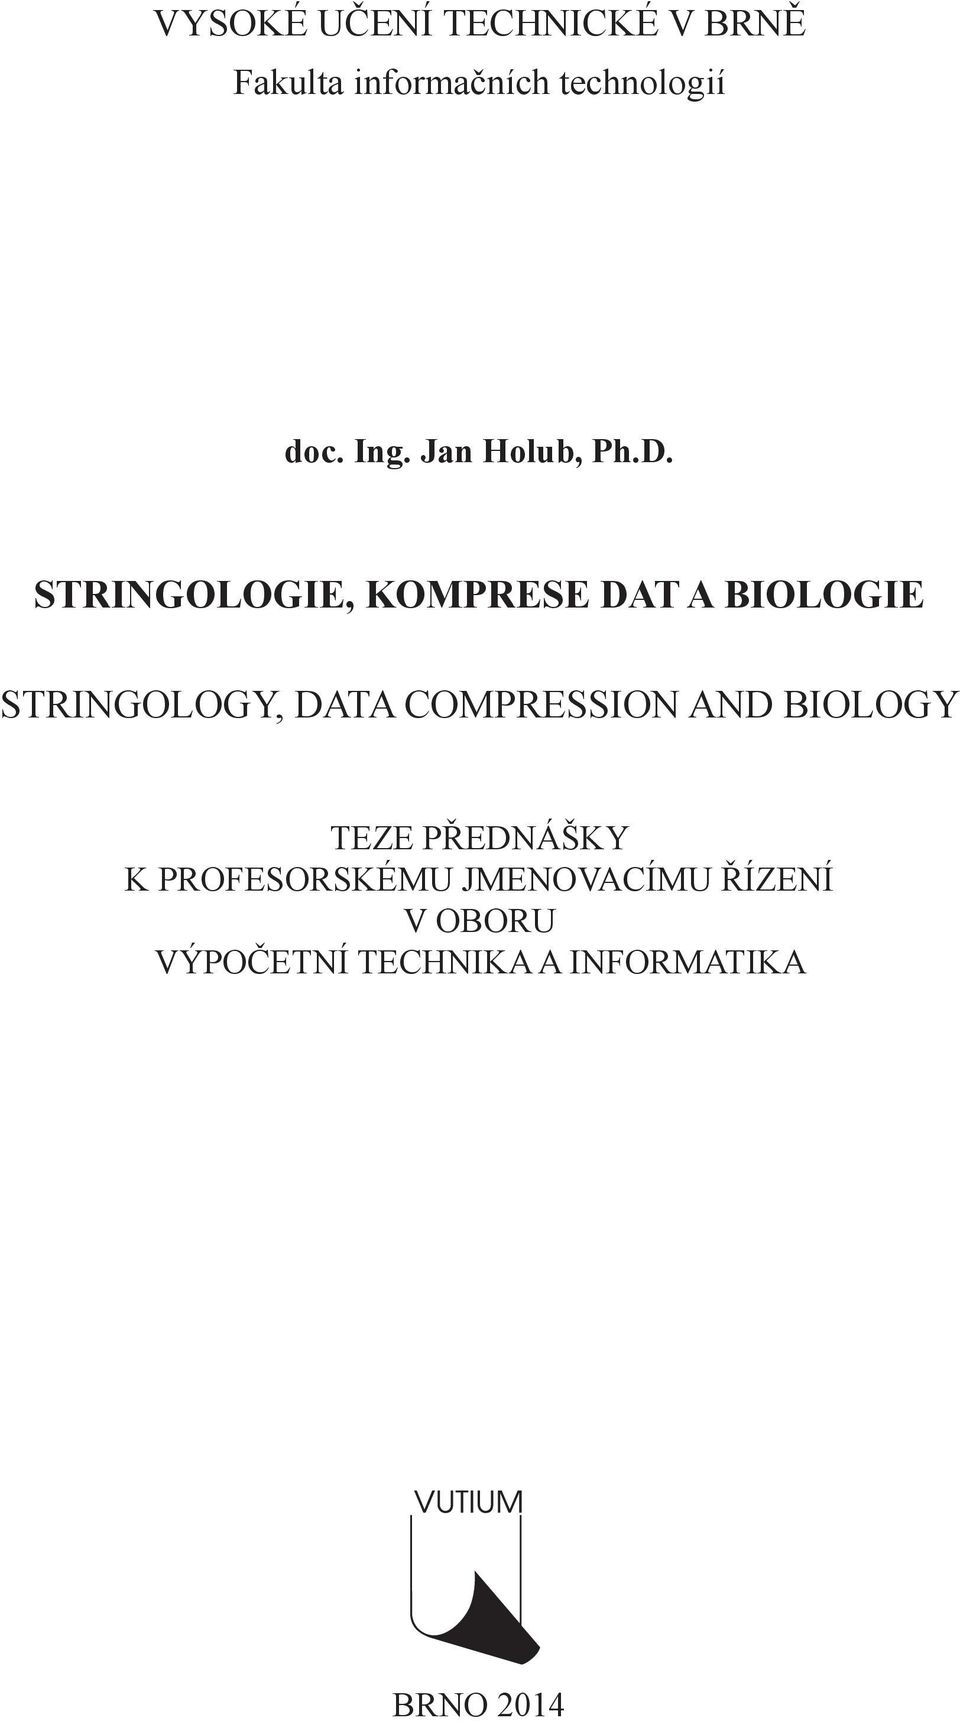 Stringologie, komprese dt biologie Stringology, dt compression